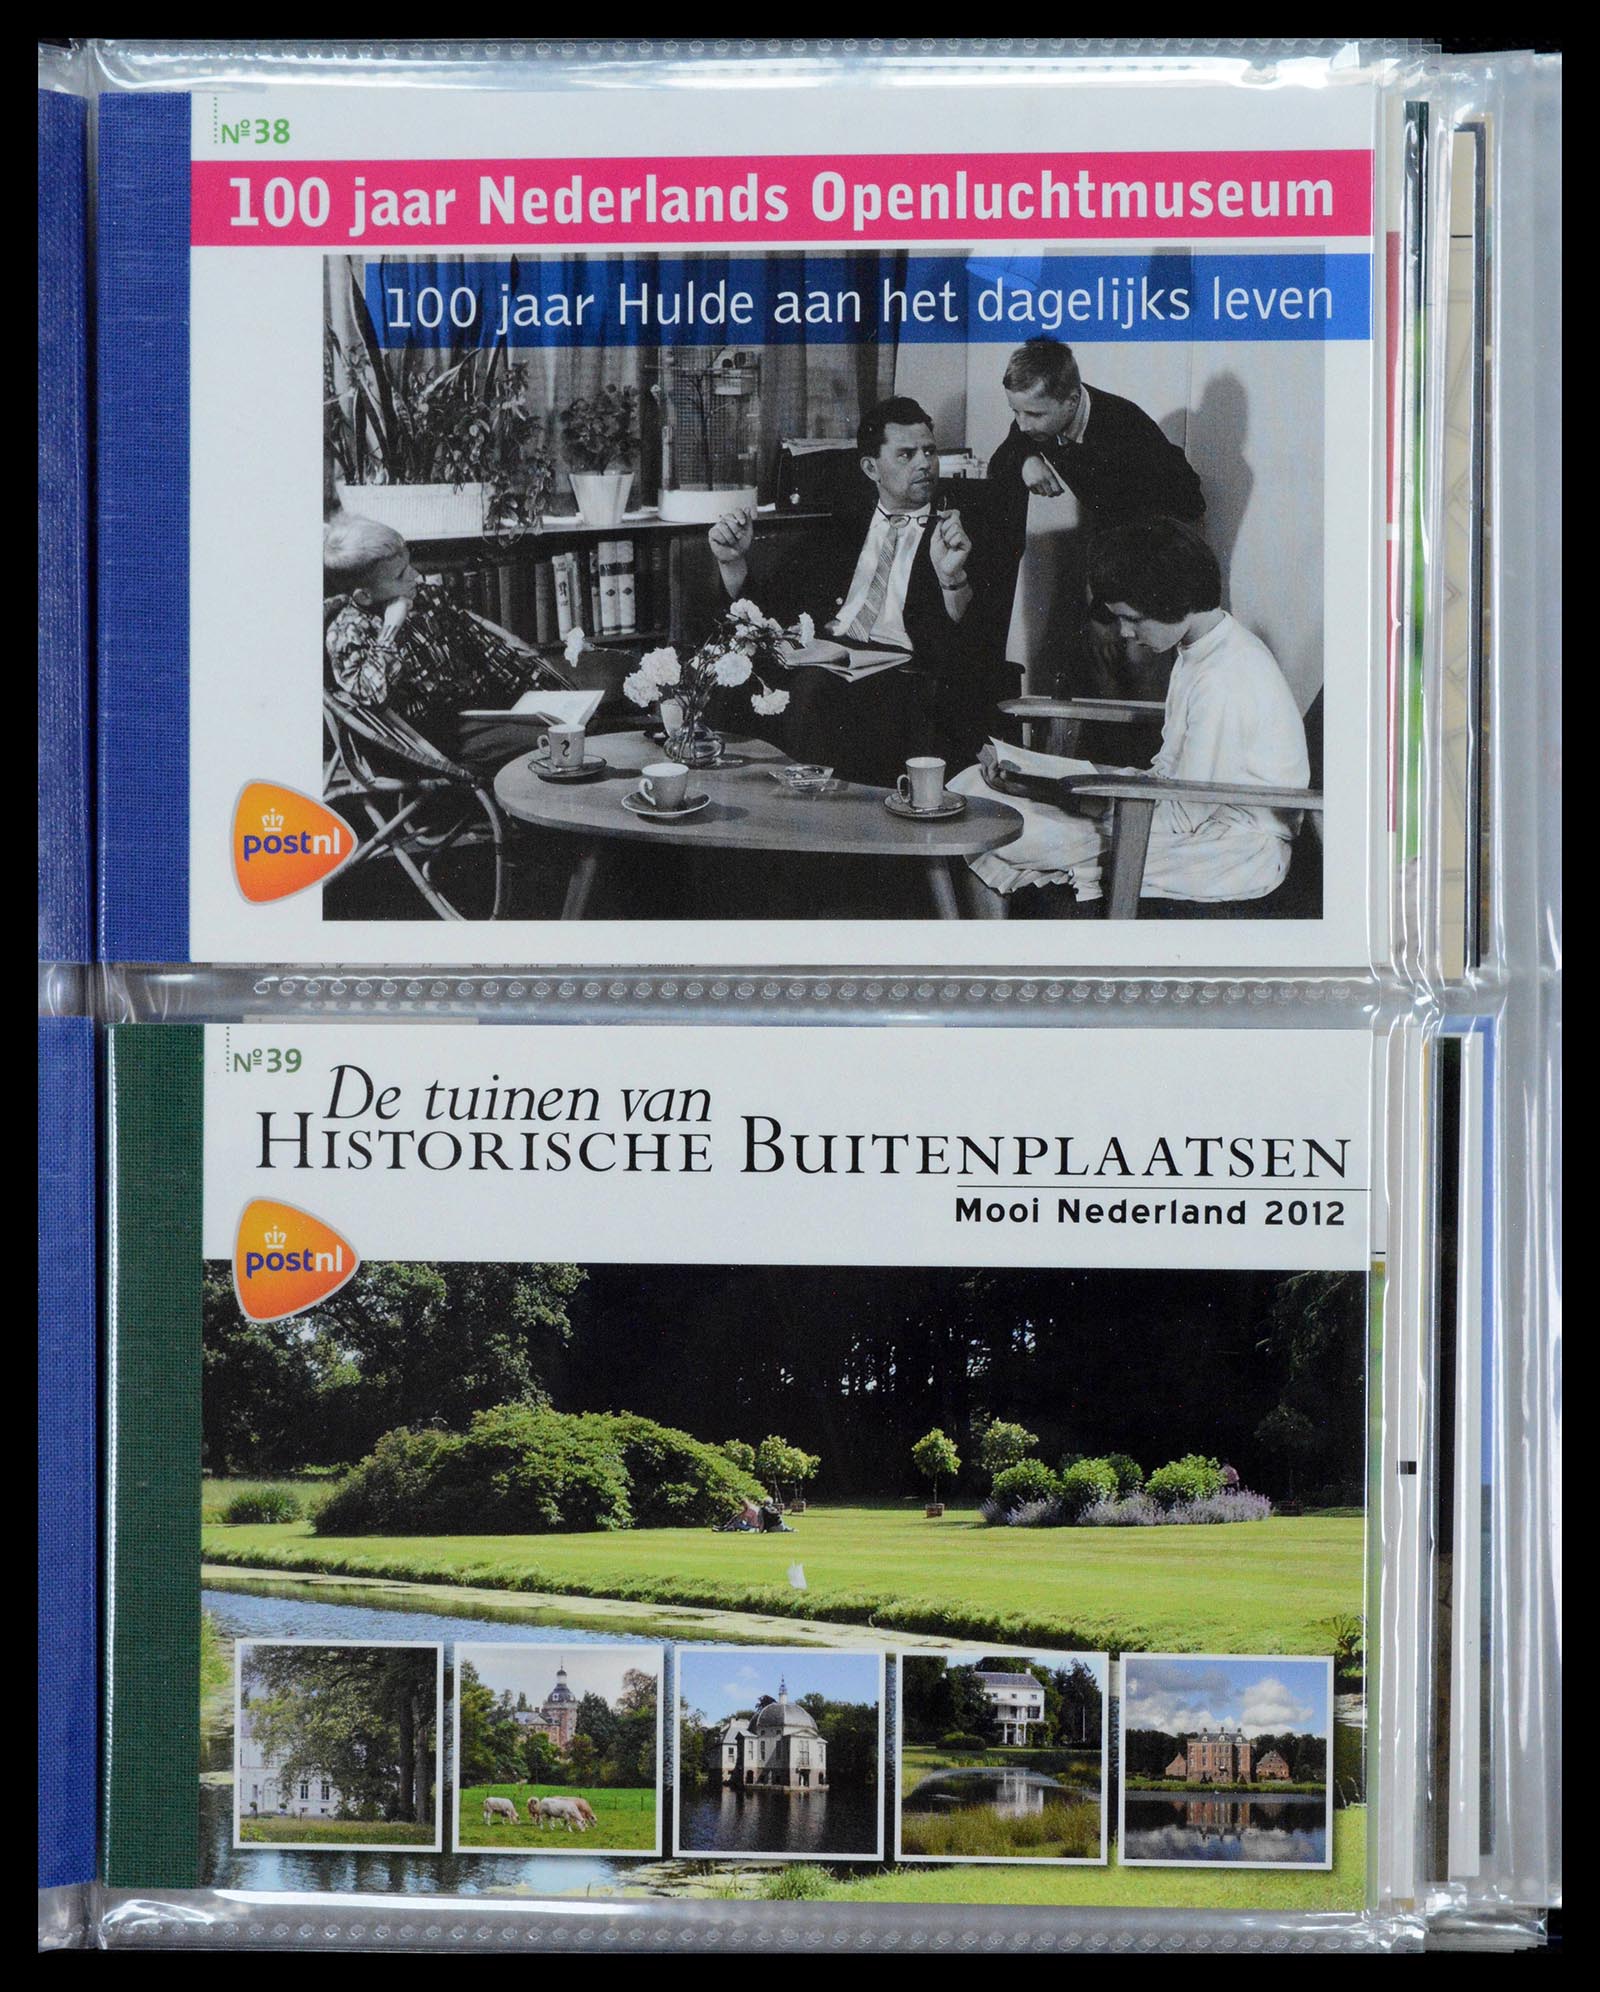 39018 0020 - Stamp collection 39018 Netherlands prestige booklets 2003-2016.